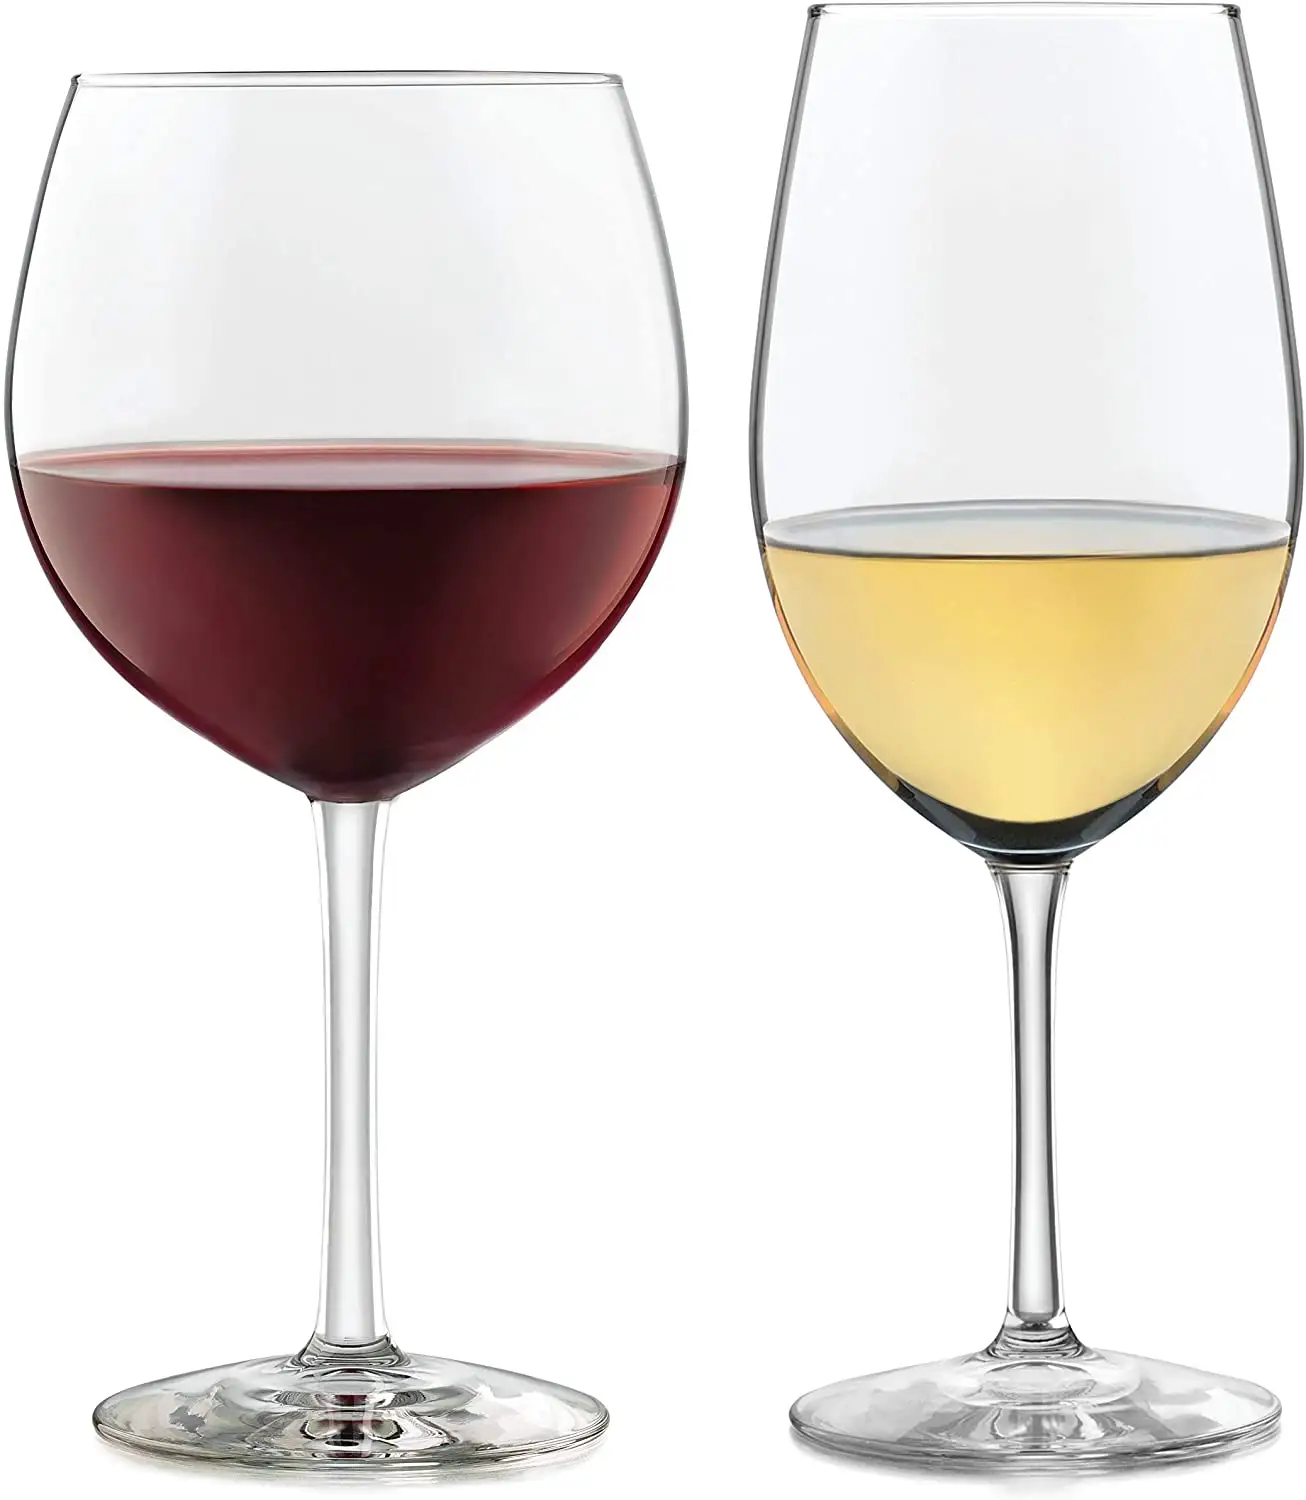 RTL üzüm bağları 12 parça şarap bardağı partisi seti Chardonnay ve Merlot Bordeaux